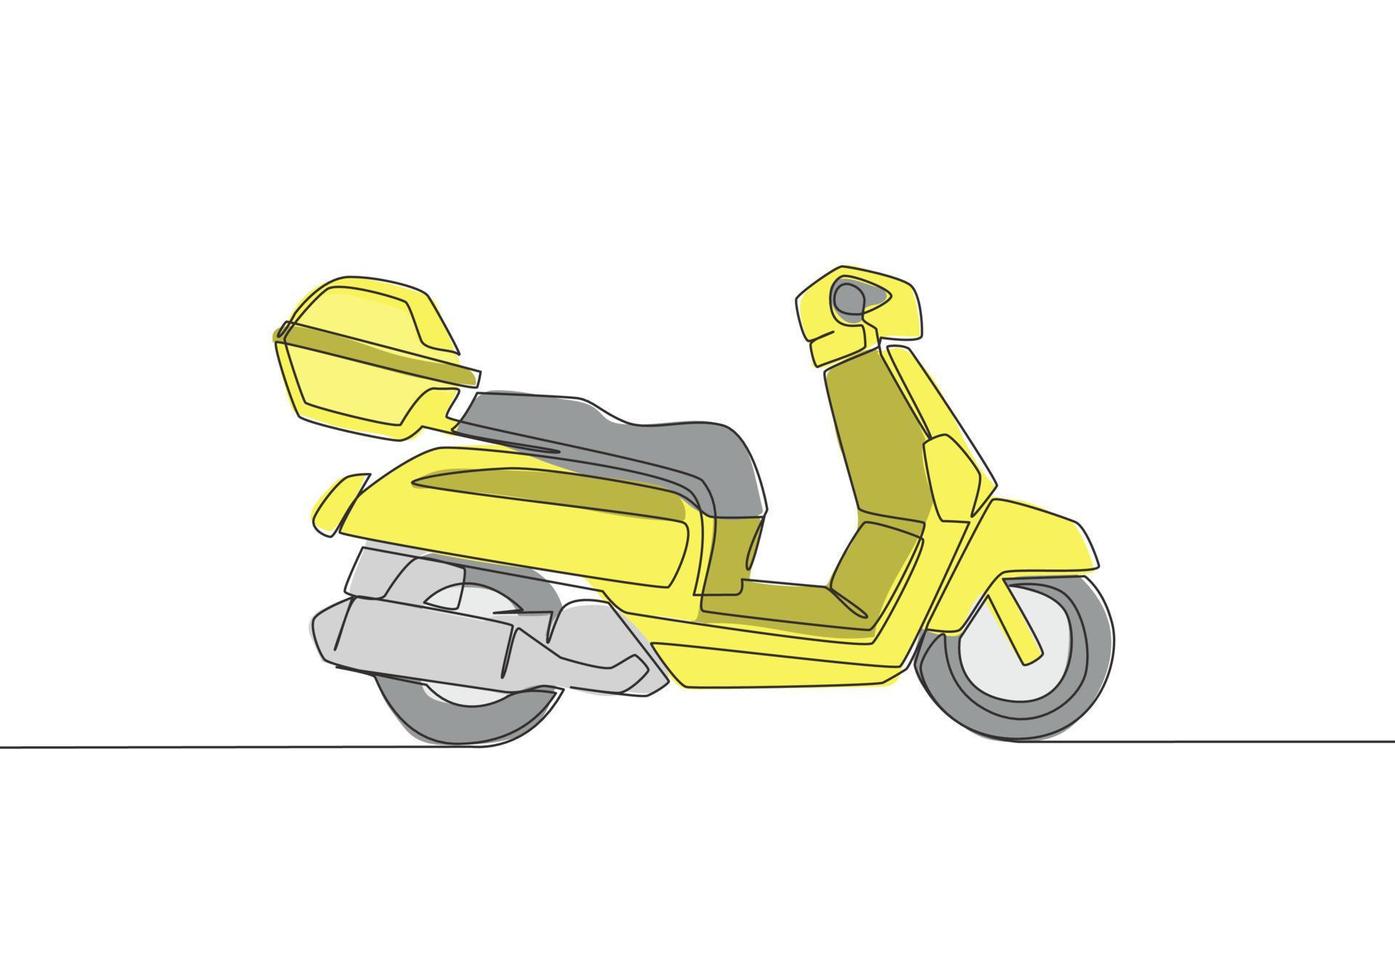 soltero continuo línea dibujo de mensajero entrega Servicio moto logo. scooter motocicleta concepto. uno línea dibujar diseño vector ilustración